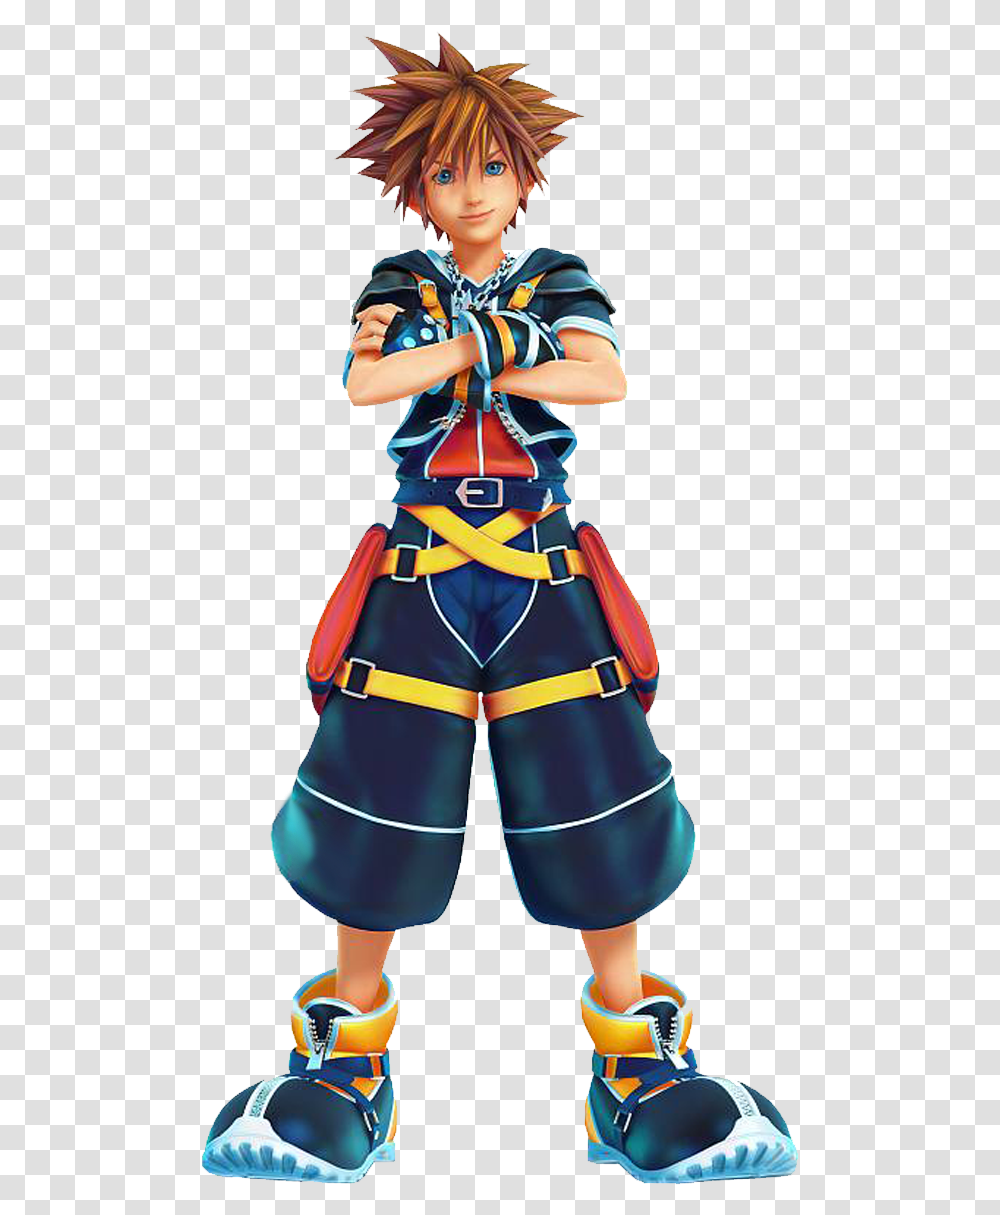 Sora Kingdom Hearts Kingdom Hearts Character Sora, Costume, Person, Human, Fireman Transparent Png